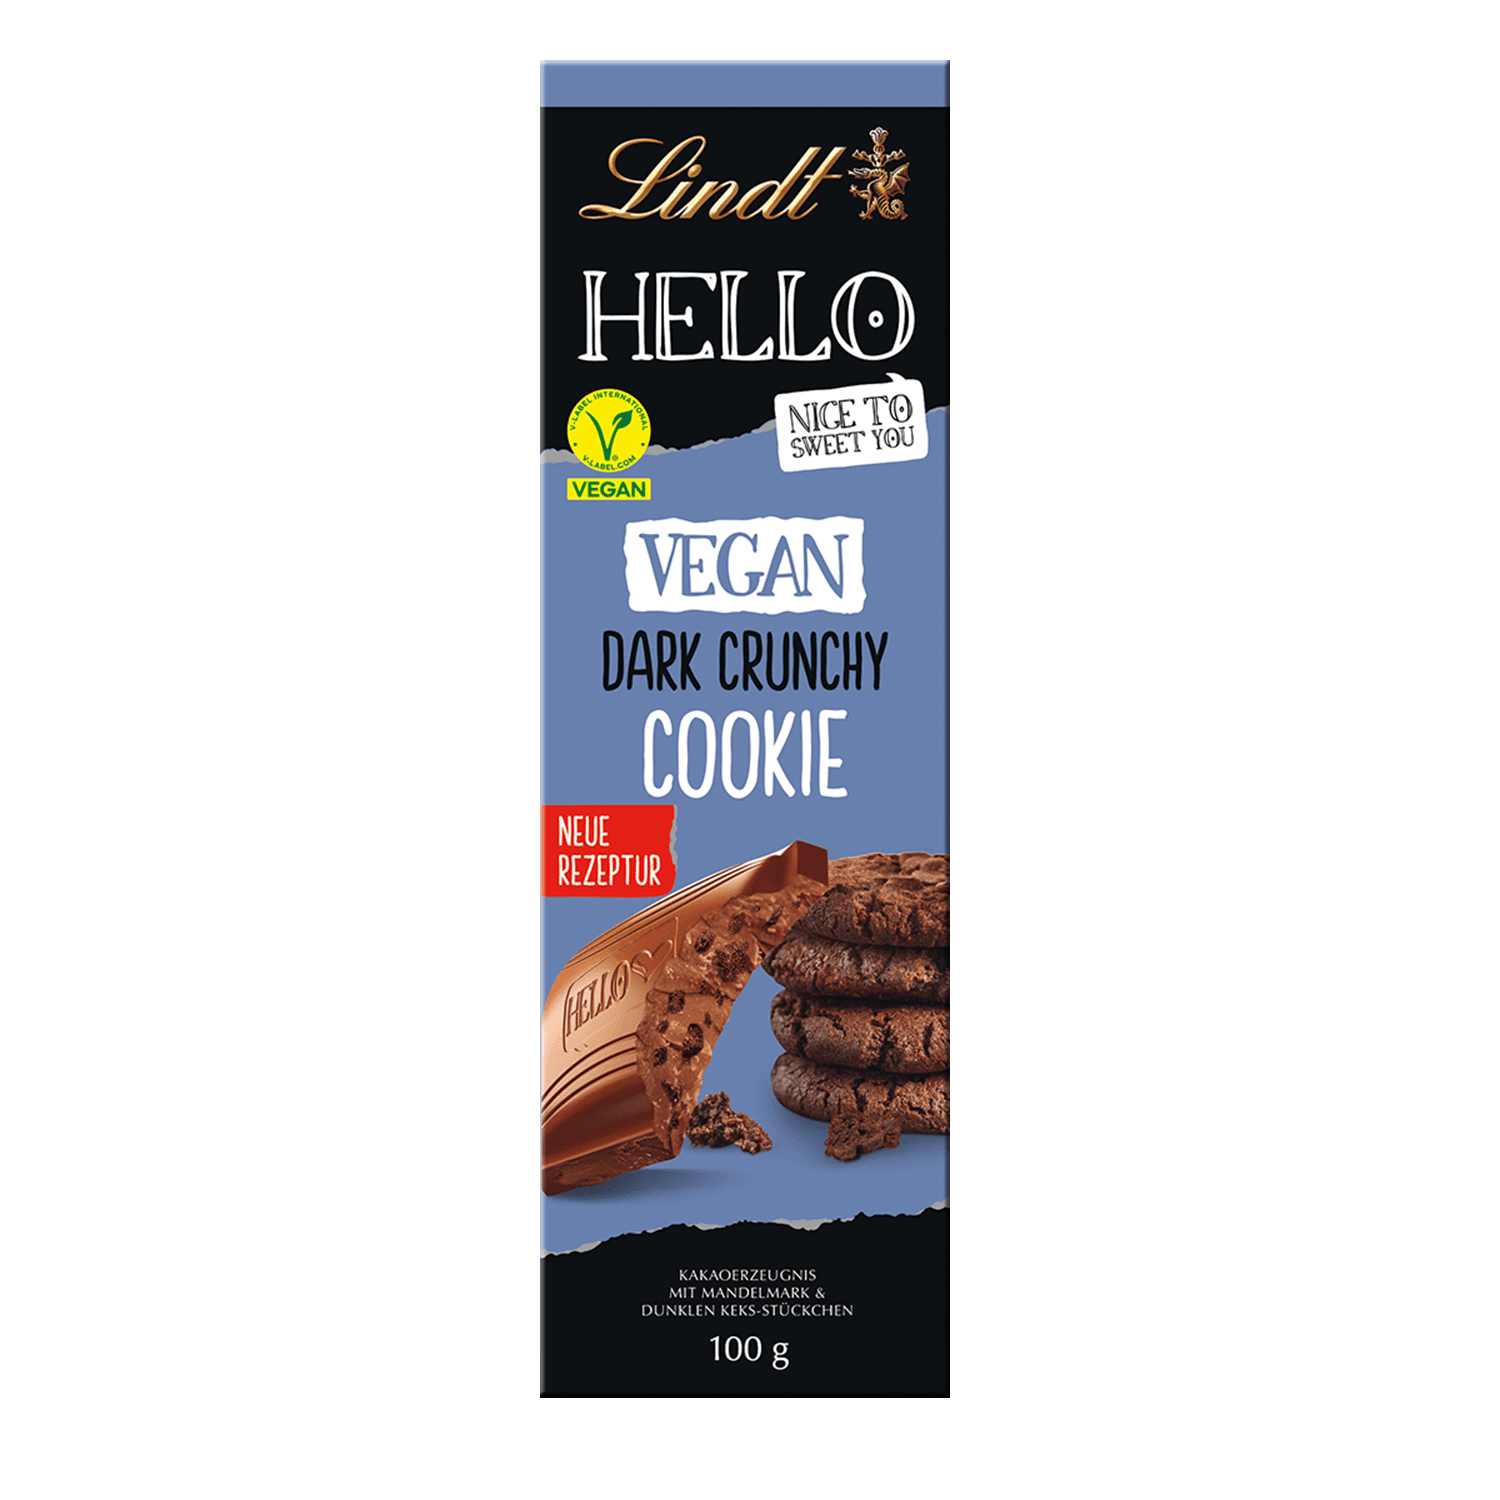 HELLO Vegan Dark Crunchy Cookie, 100g